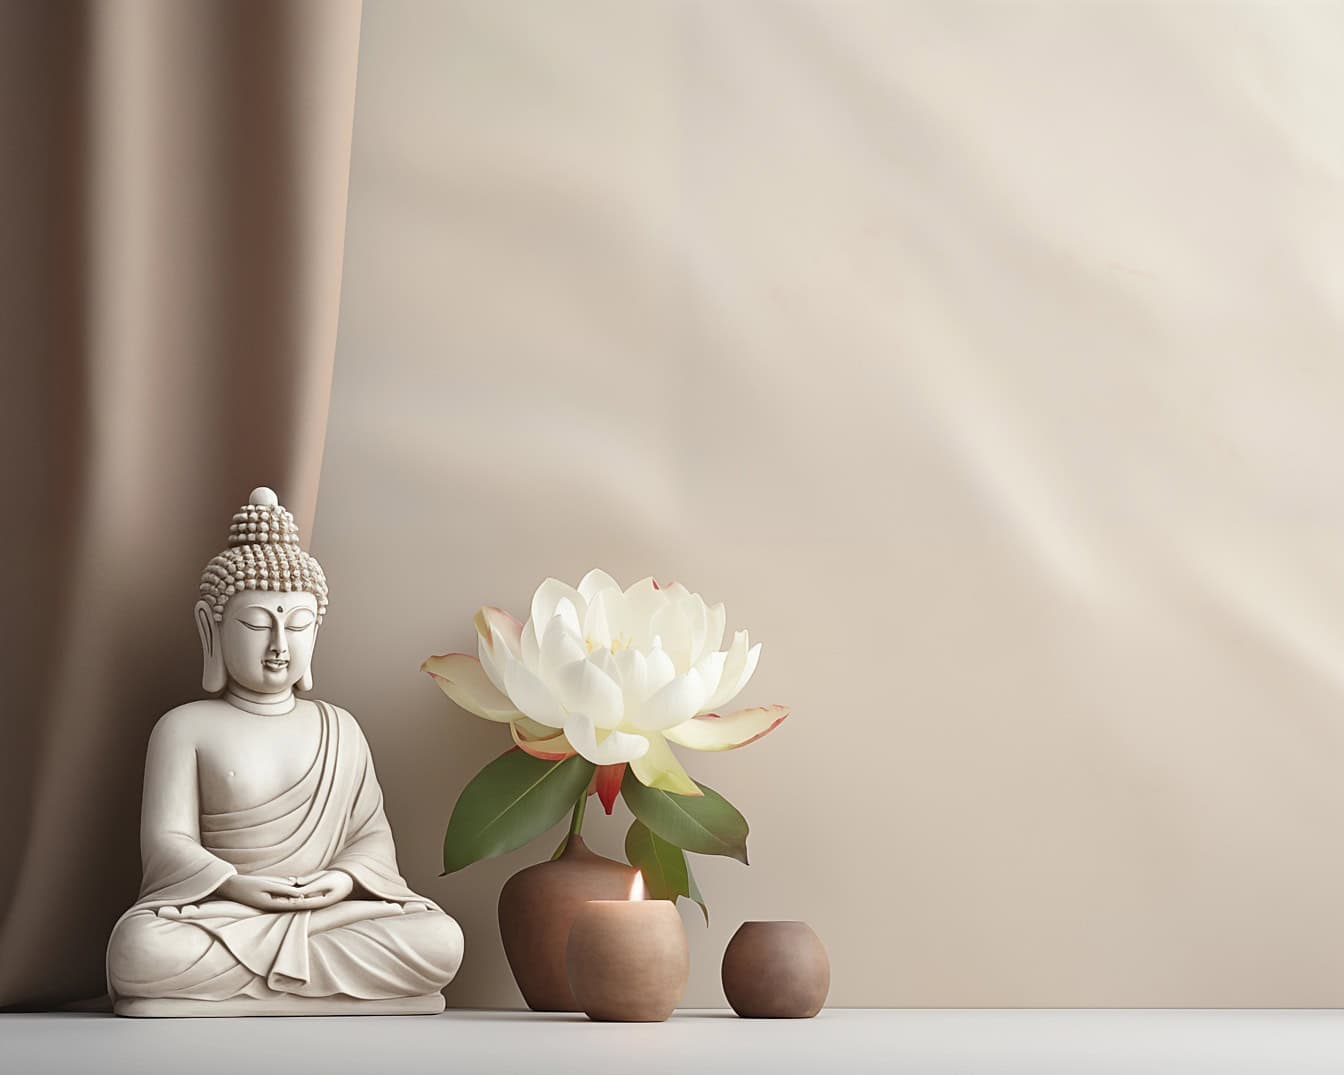 Patung buddha putih duduk di samping bunga teratai putih, ilustrasi yang menggambarkan meditasi Zen